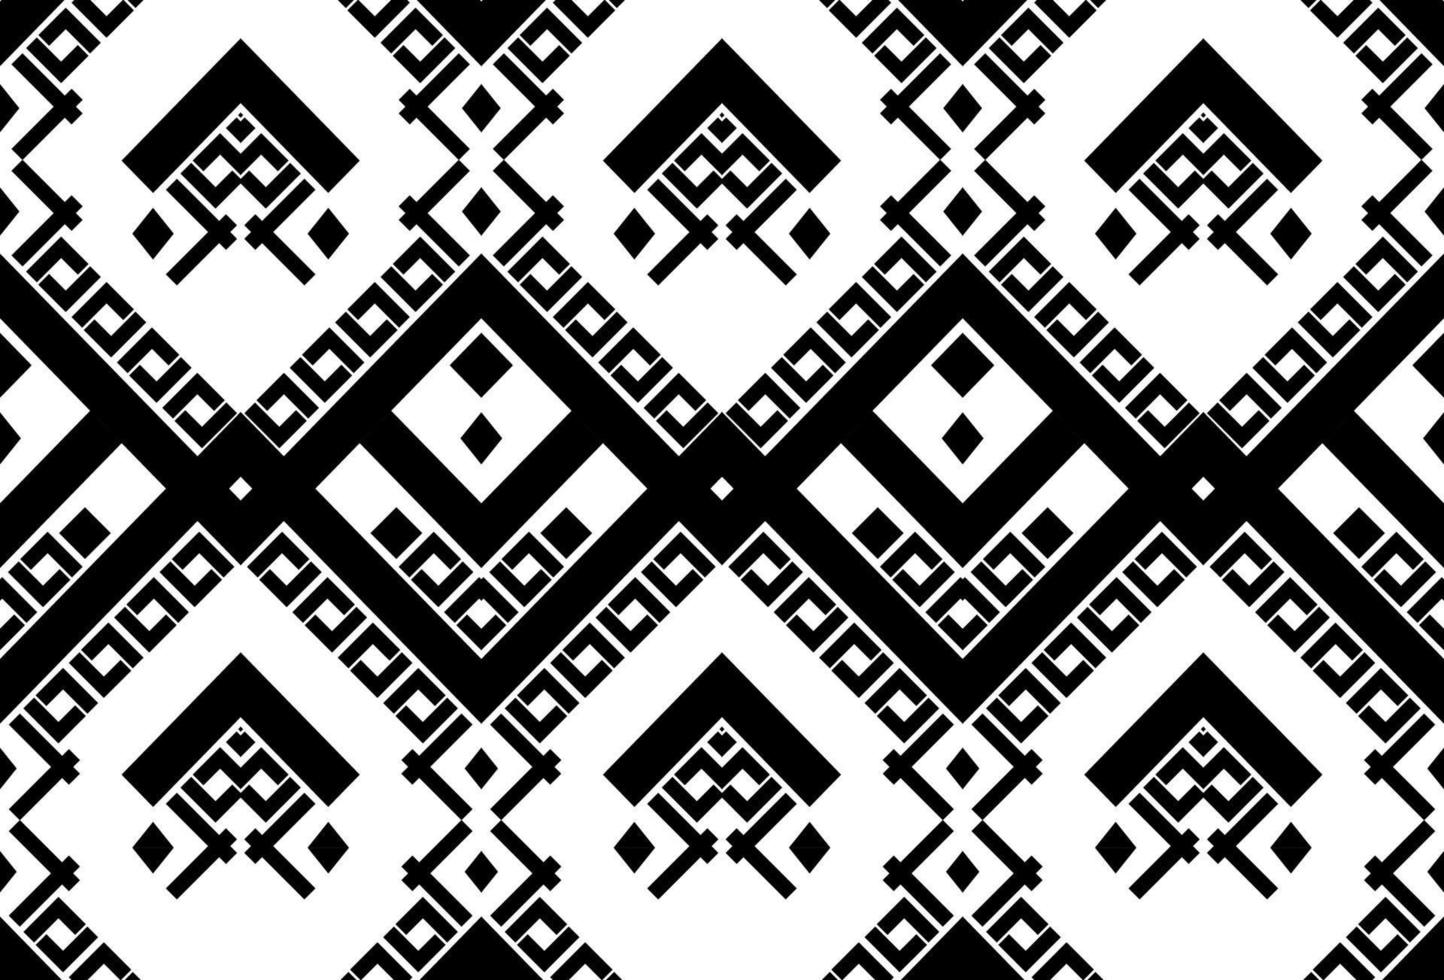 diseño tradicional étnico oriental ikat de patrones sin fisuras para fondo, alfombra, papel pintado, ropa, envoltura, batik, tela, ilustración vectorial. estilo de bordado vector